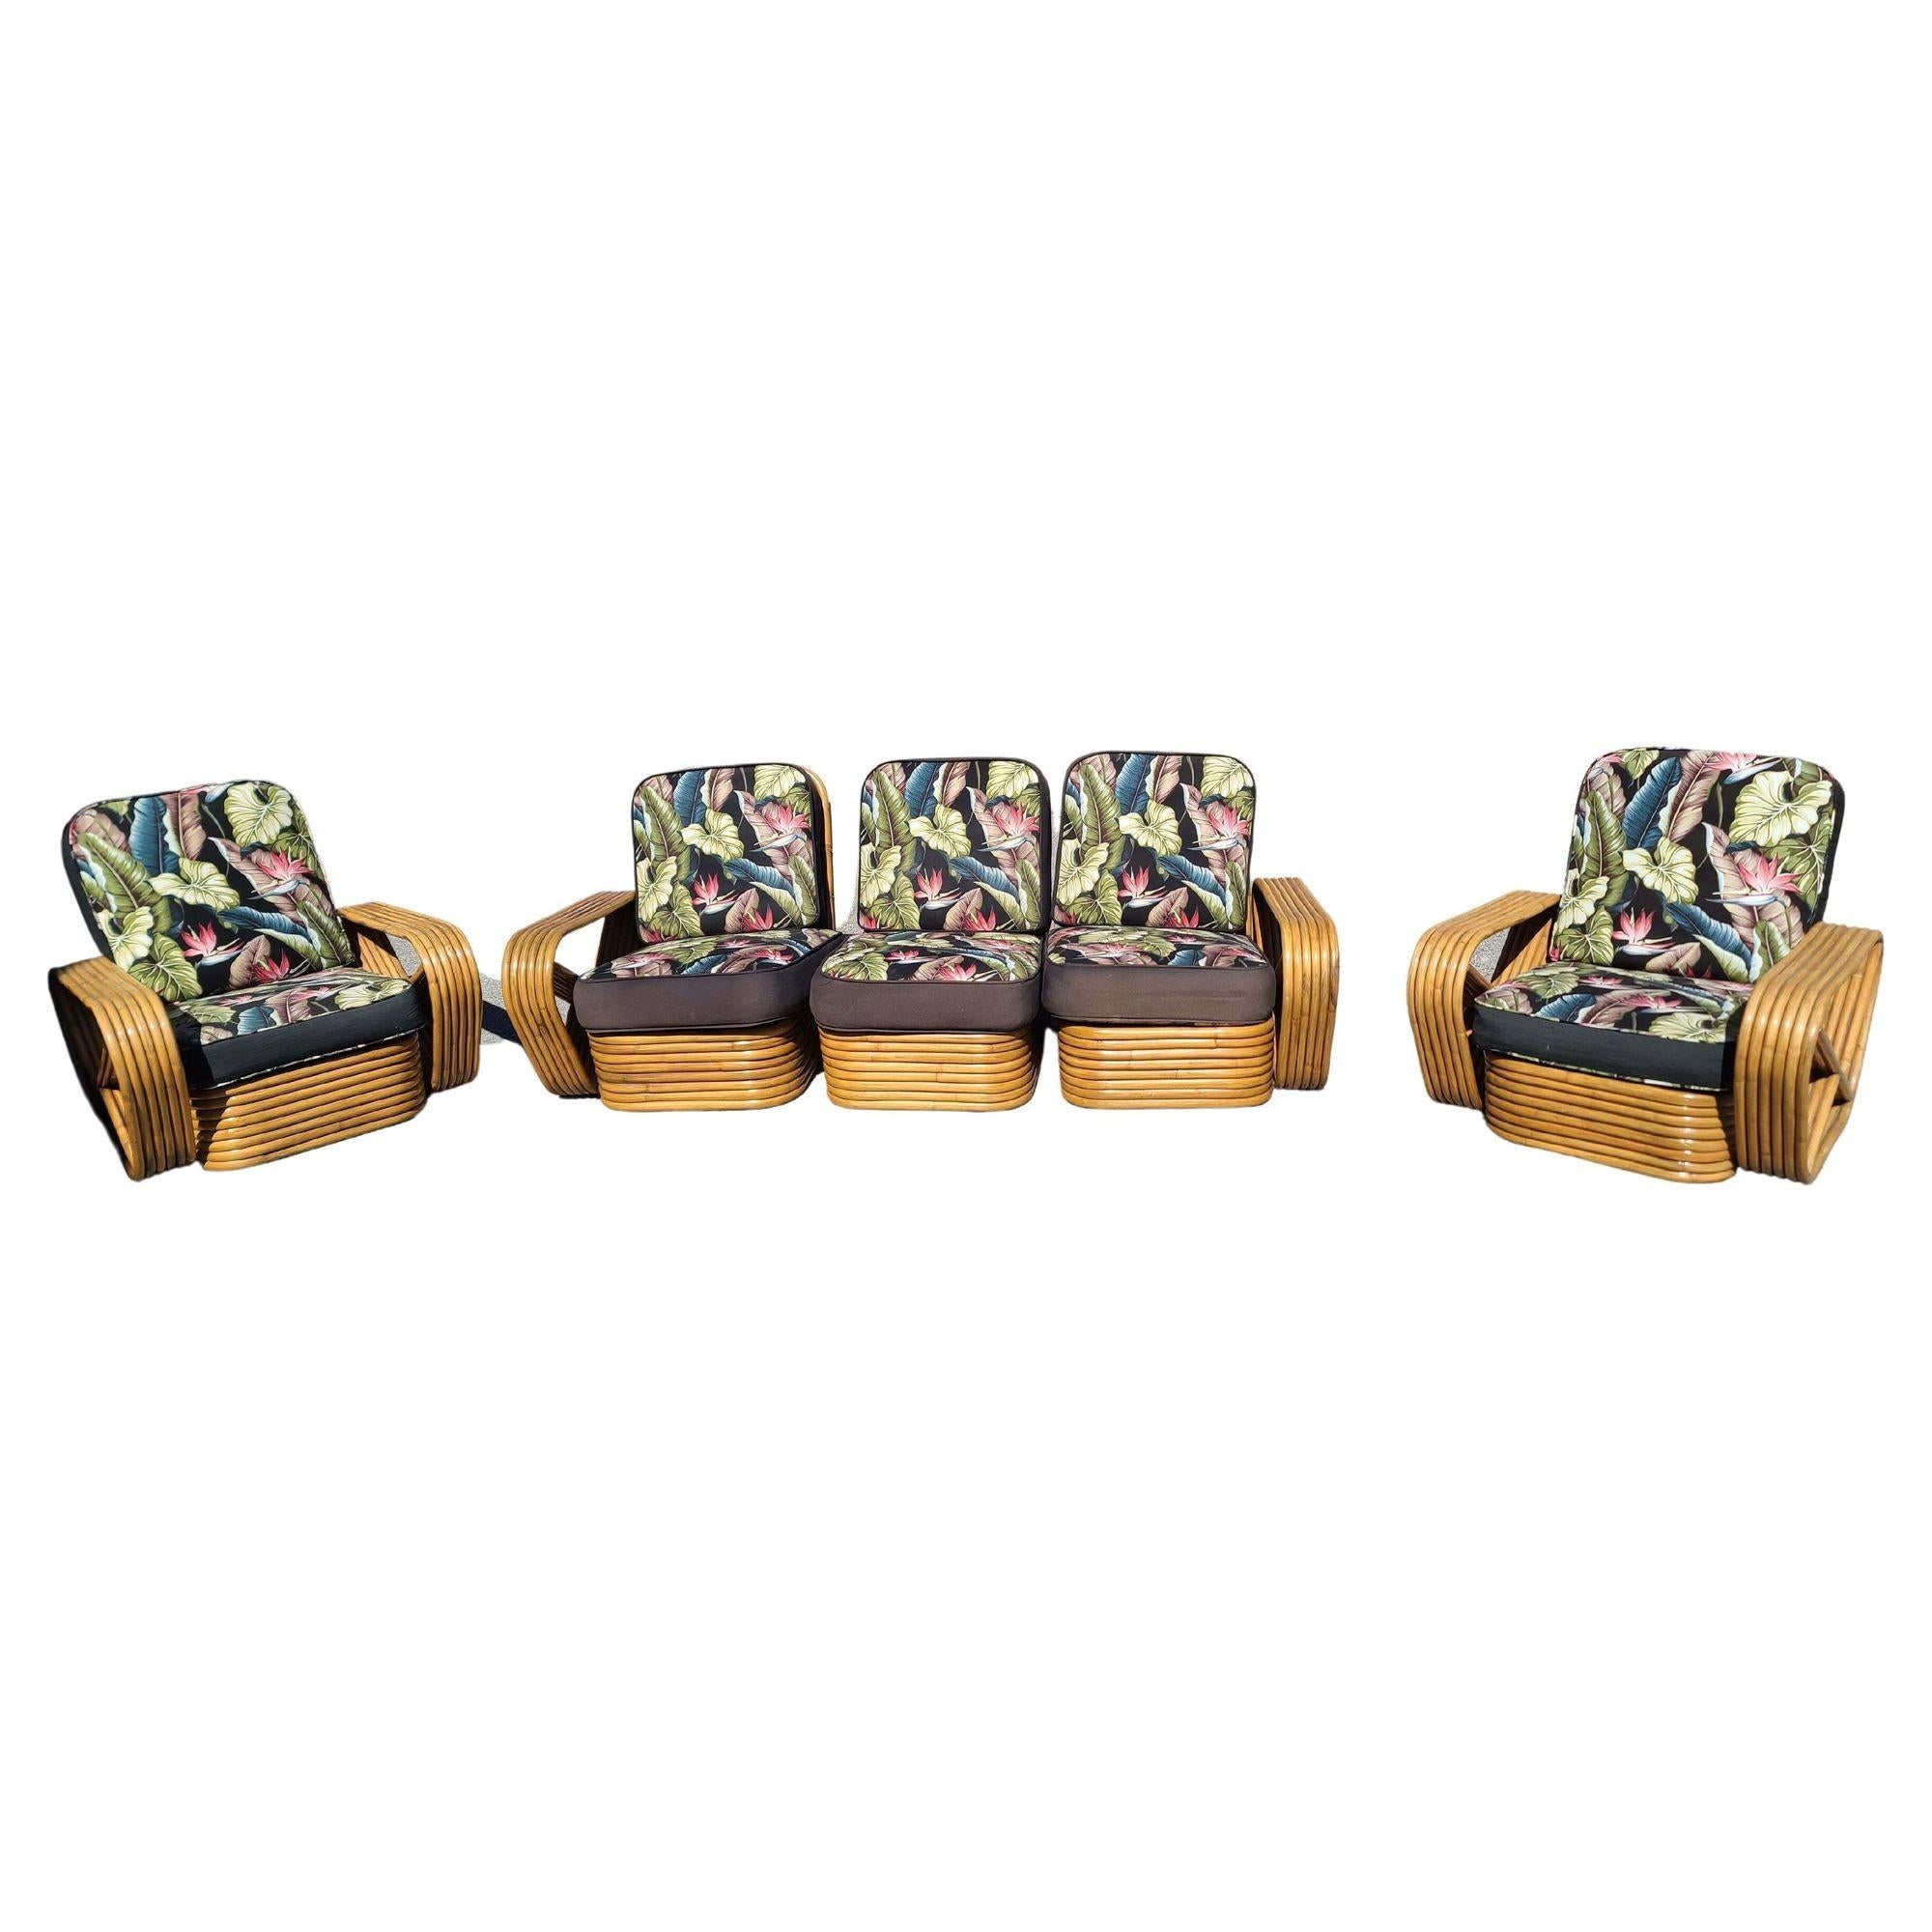 Ensemble de salon Art Déco en rotin comprenant un canapé sectionnel et une chaise longue assortis. Tous deux sont dotés des célèbres bras latéraux en bretzel carré à six brins et d'une base en rotin empilé, conçus à l'origine par Pa Frankl. Les